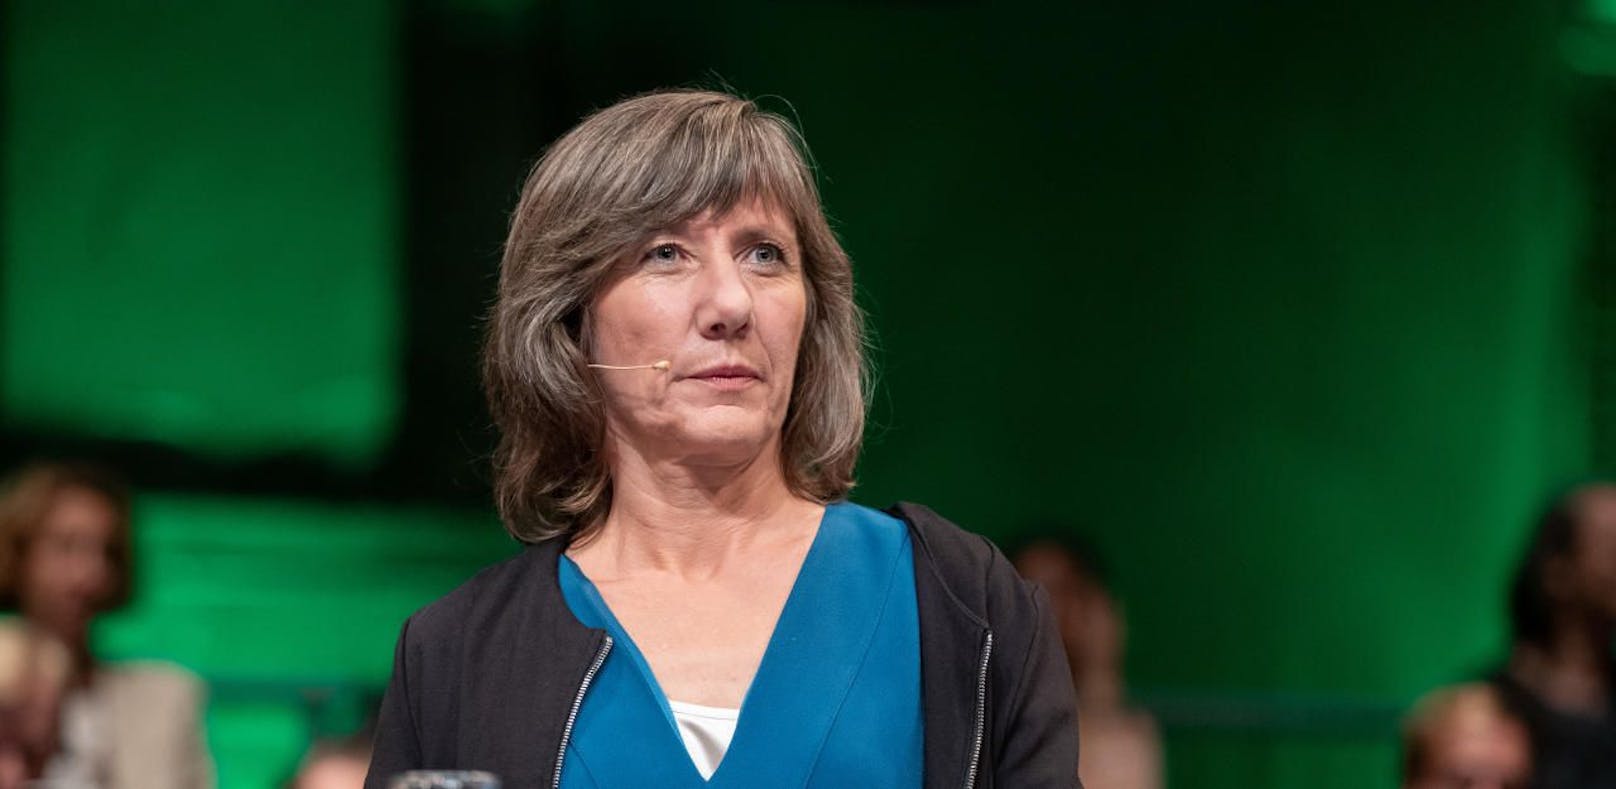 Grünen-Spitzenkandidatin Birgit Hebein